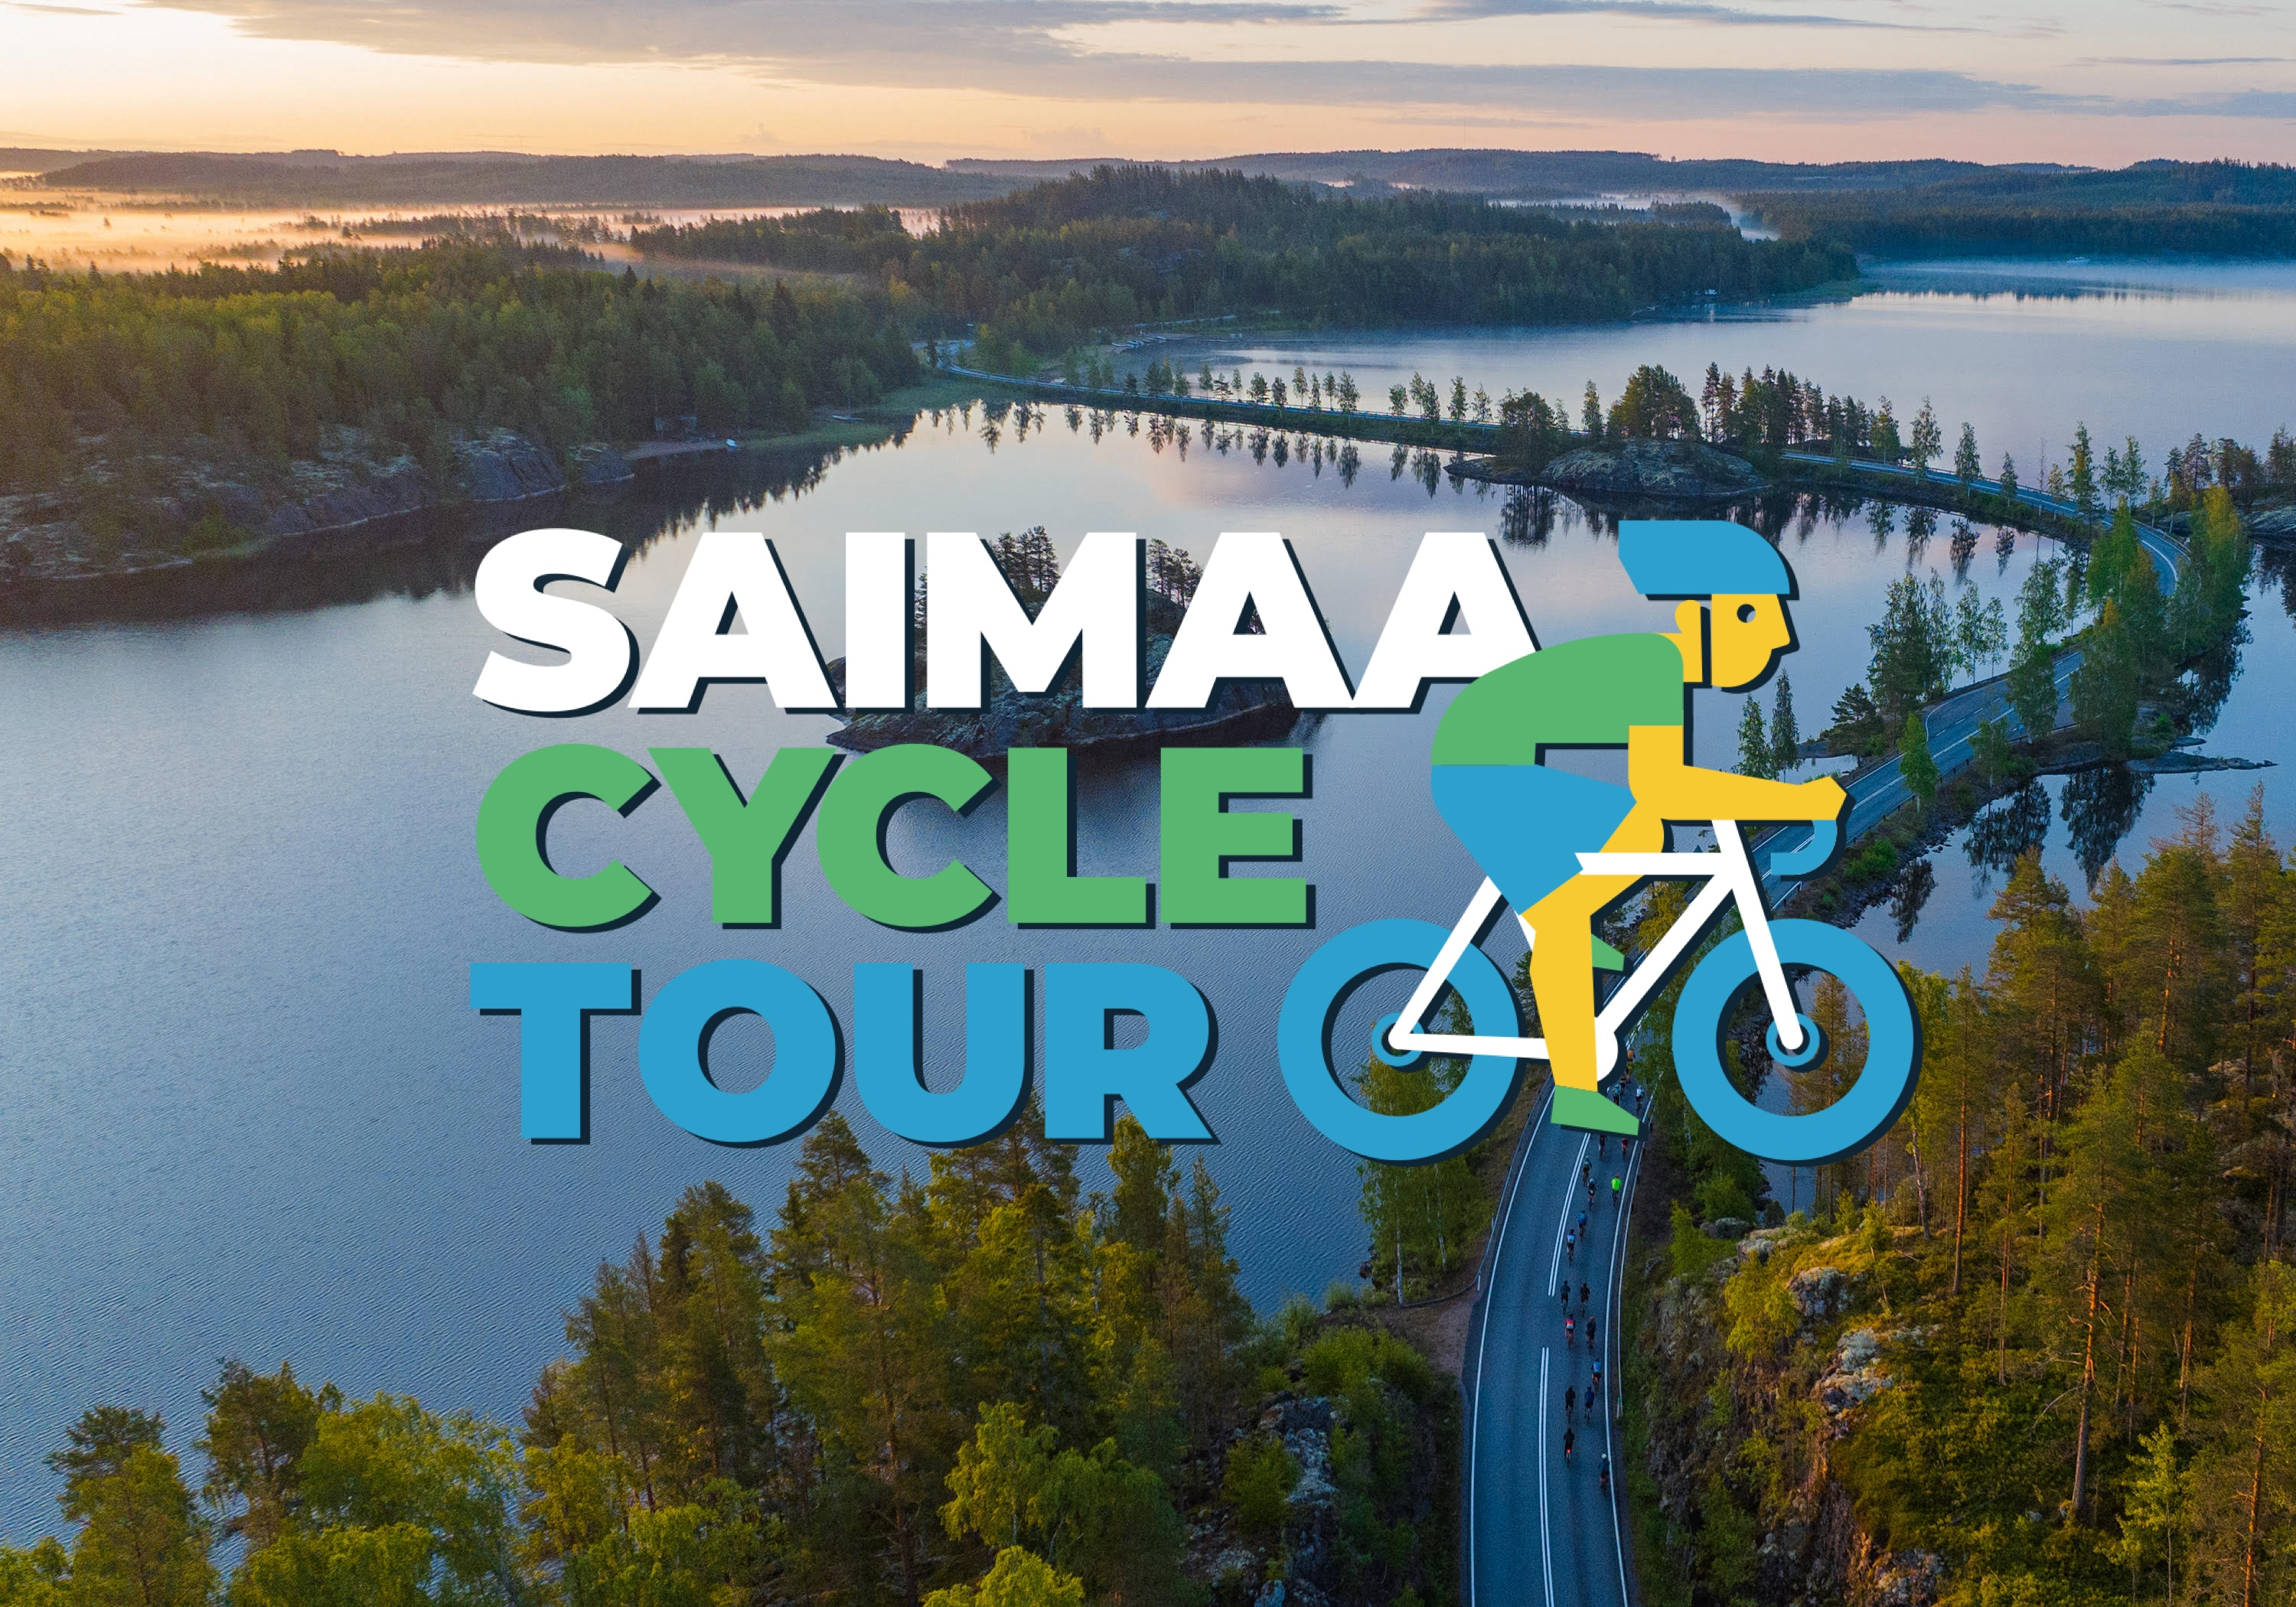 SAIMAA CYCLE TOUR 24 cover image